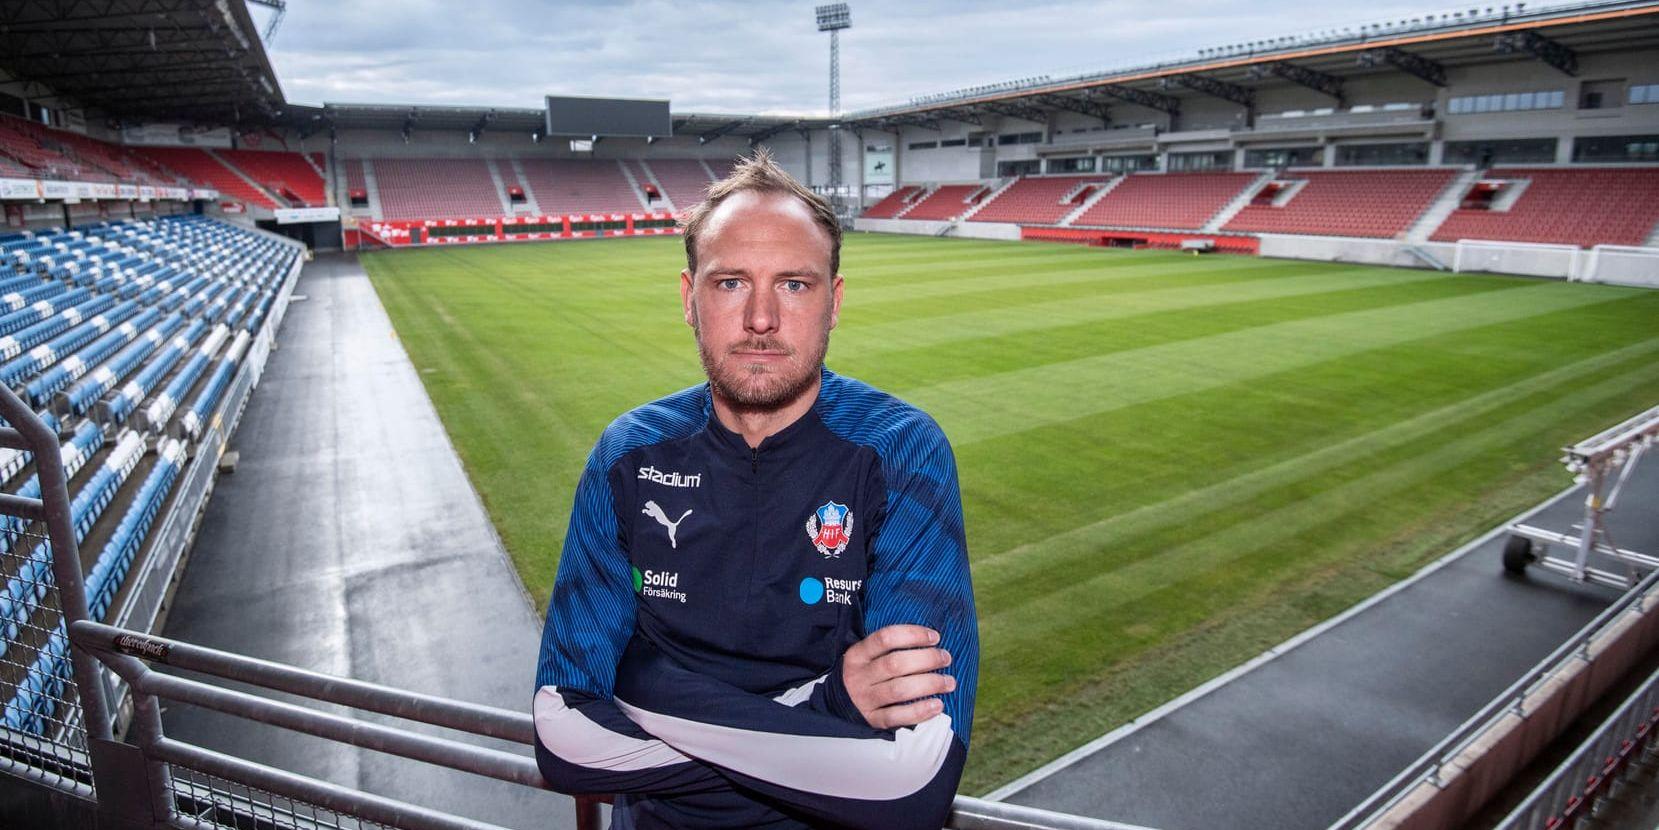 Landslagskaptenen Andreas Granqvist och hans lagkamrater i Helsingborg får åter bjuda hemmapubliken på allsvensk fotboll på Olympia. Efter två säsonger i superettan är HIF tillbaka i landets högsta serie.